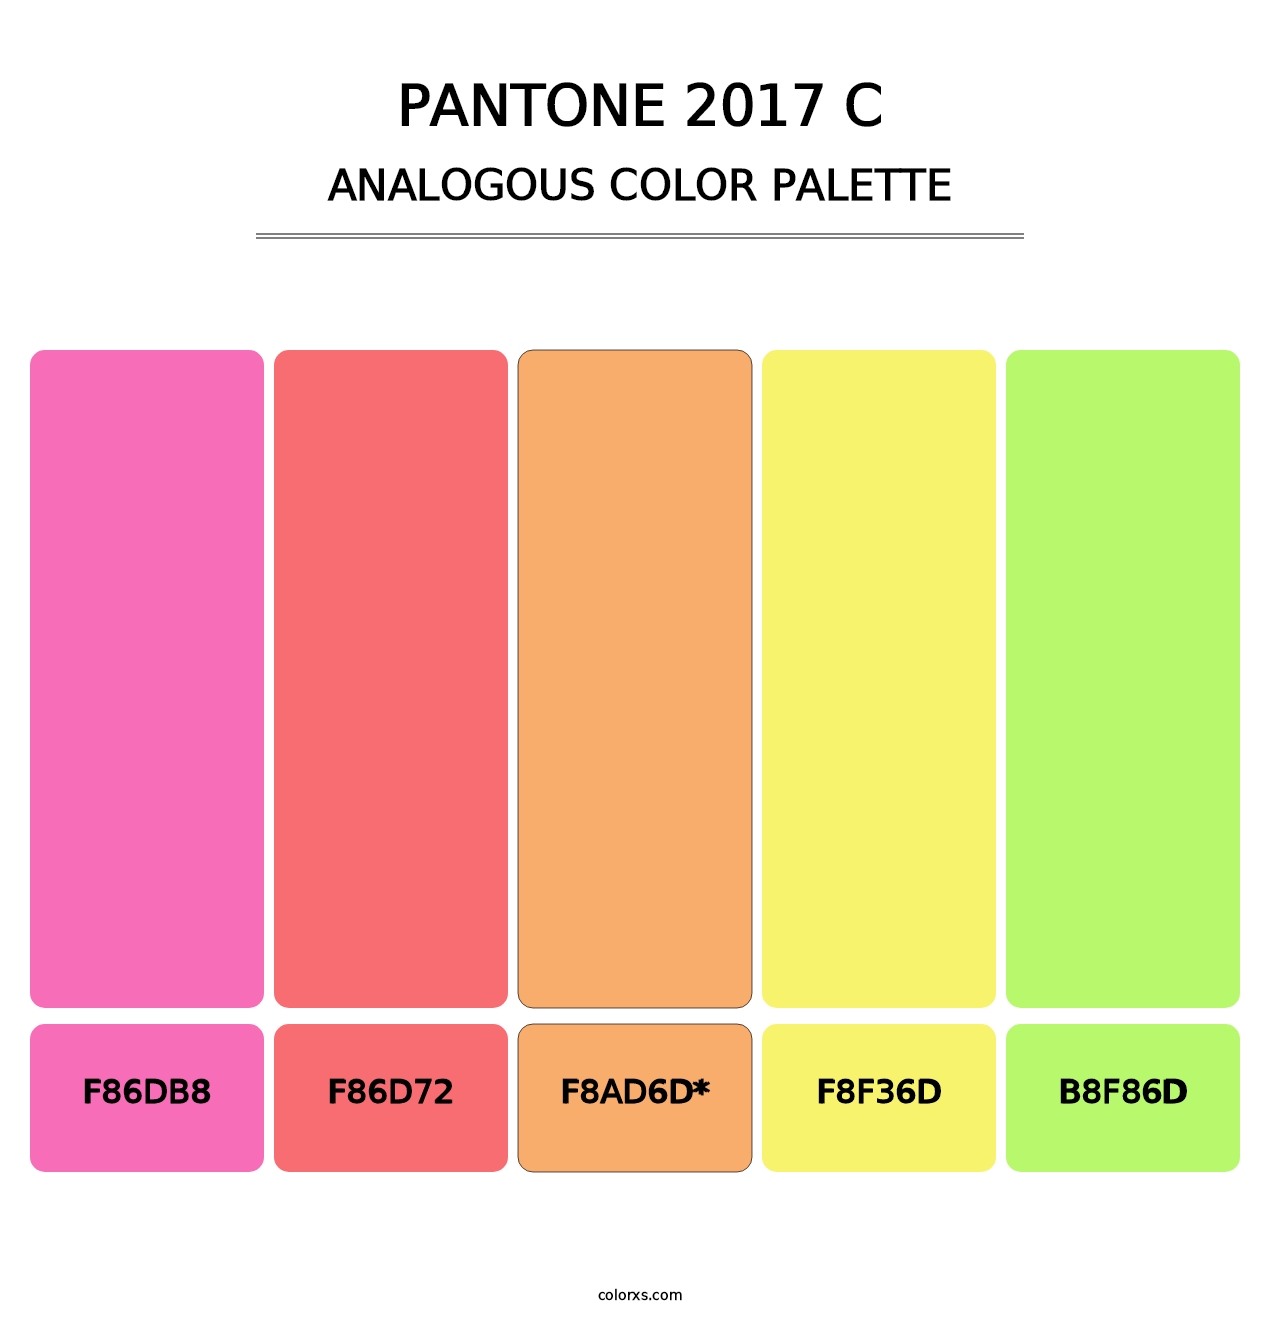 PANTONE 2017 C - Analogous Color Palette